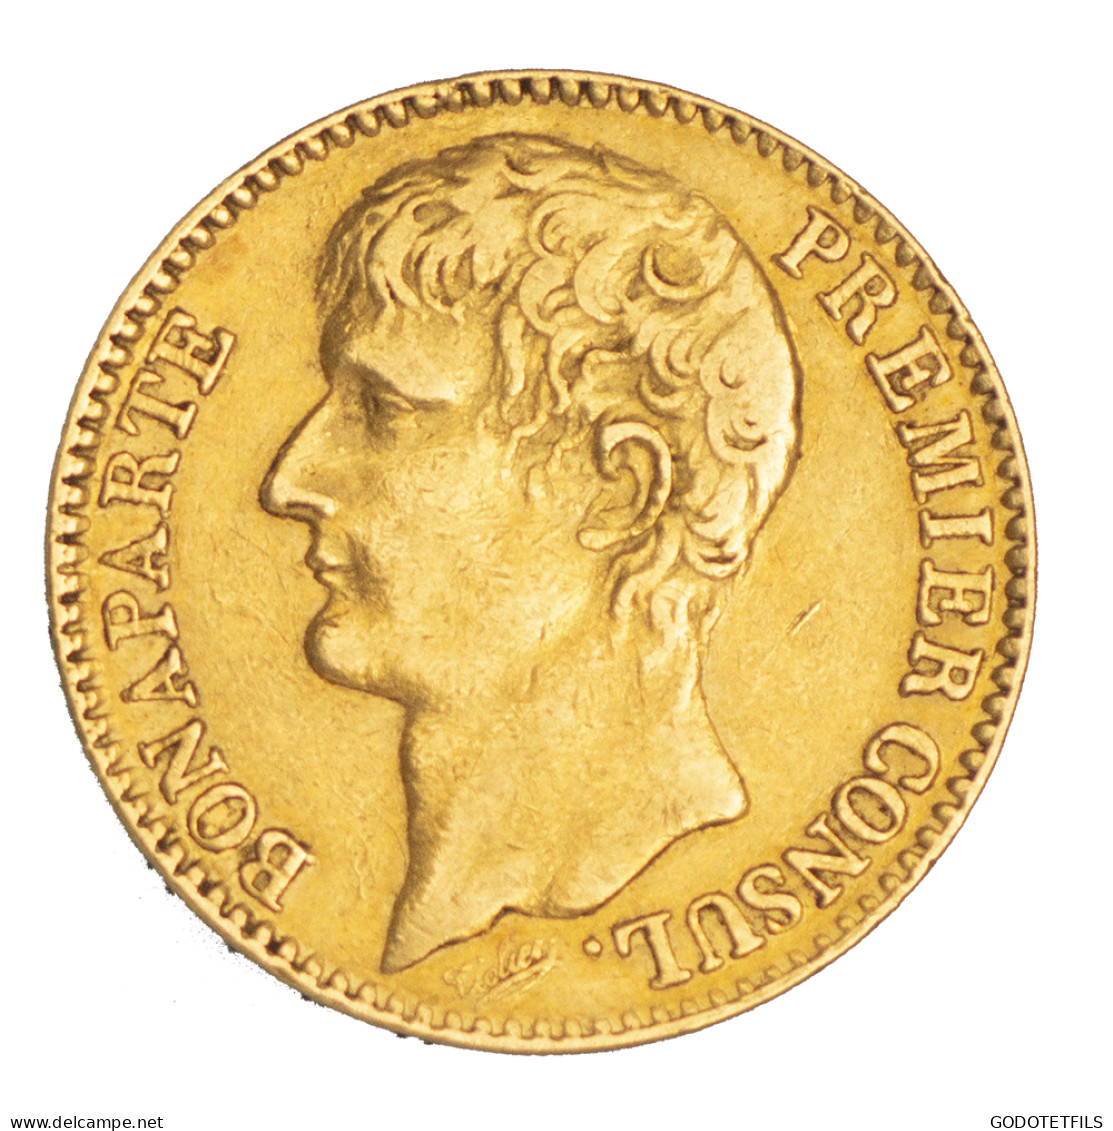 Bonaparte Premier Consul-40 Francs An XI (1803) Paris - 40 Francs (gold)